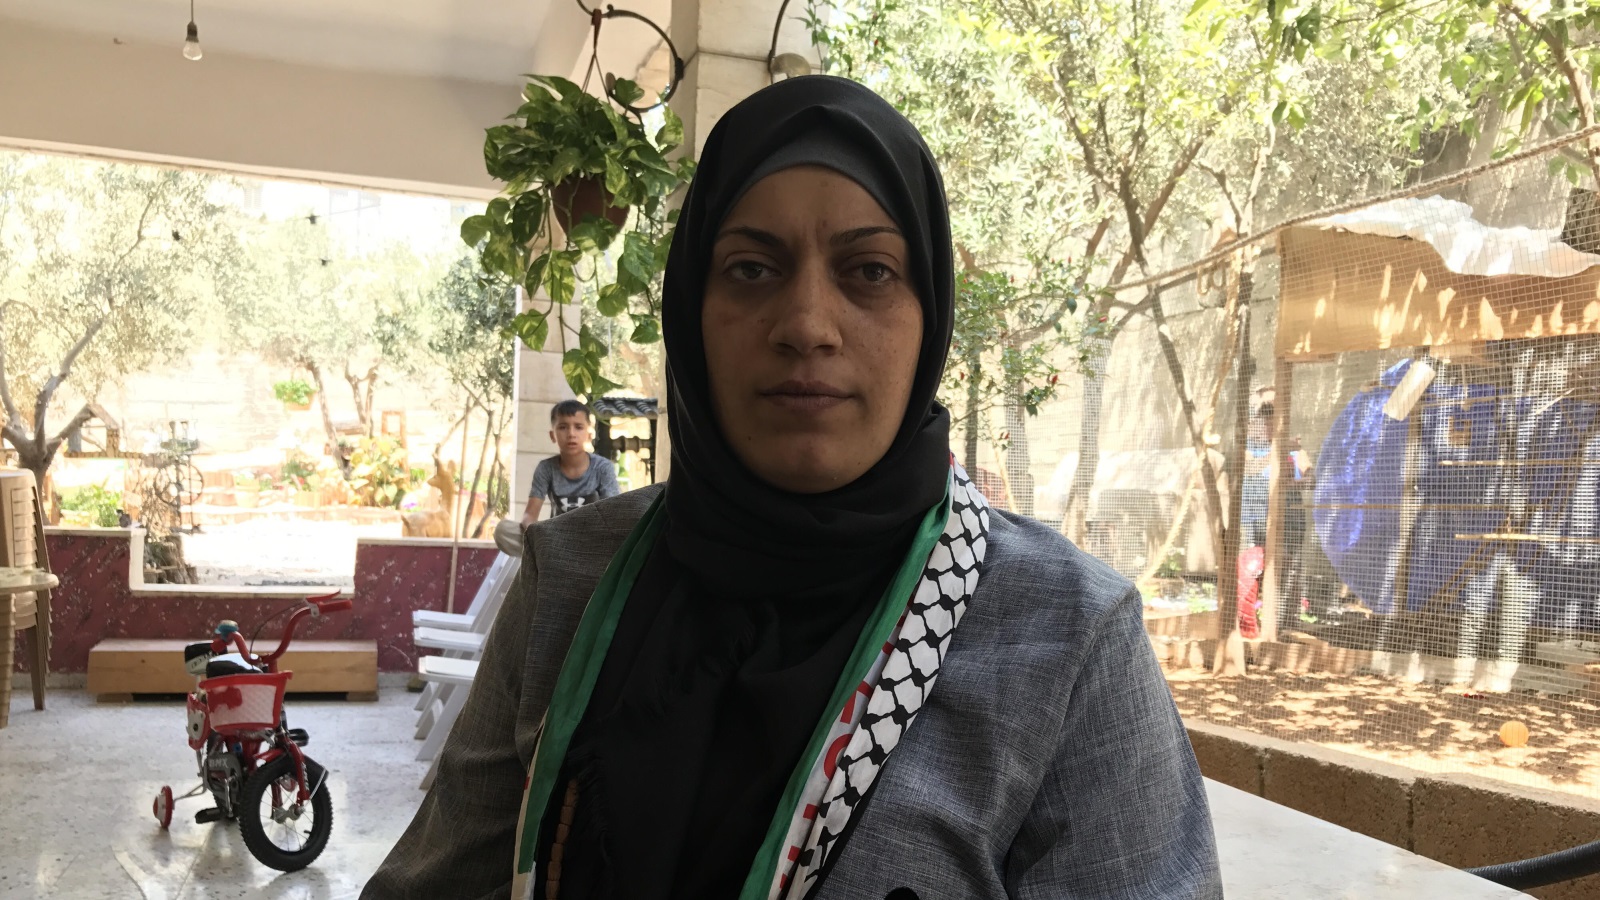 الأسيرة المحررة دلال أبو الهوى تعرضت لضغوط ومعاملة مهينة أثناء اعتقالها في السجون الإسرائيلية (الجزيرة)